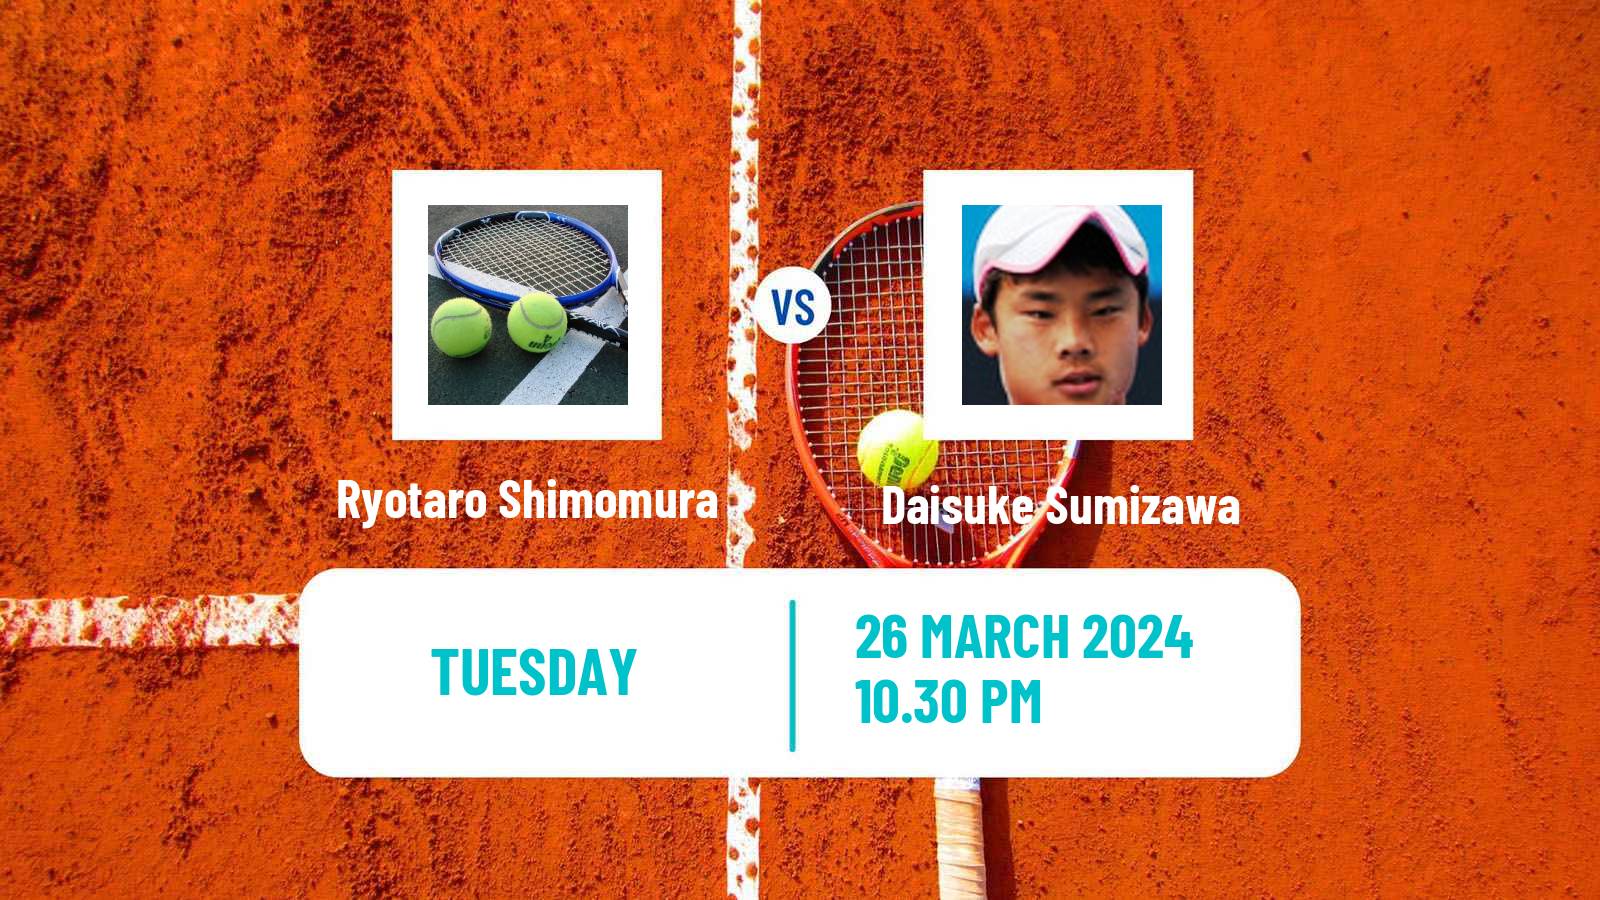 Tennis ITF M15 Tsukuba Men Ryotaro Shimomura - Daisuke Sumizawa